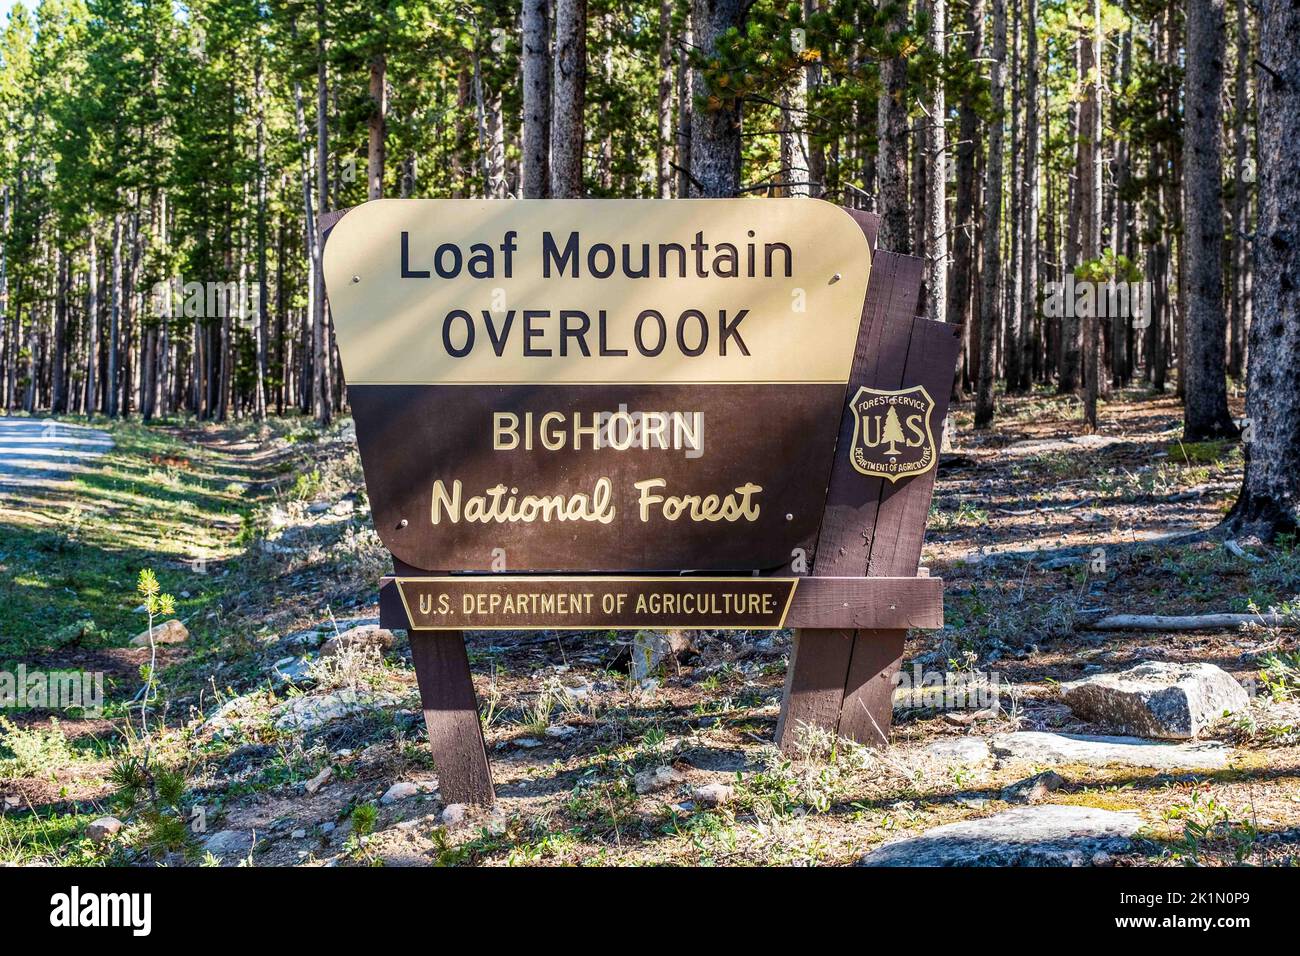 Cartello US Forest Service per Loaf Mountain Overlook nella Bighorn National Forest, Wyoming. Dipartimento DI Agricoltura DEGLI STATI UNITI. Foto Stock